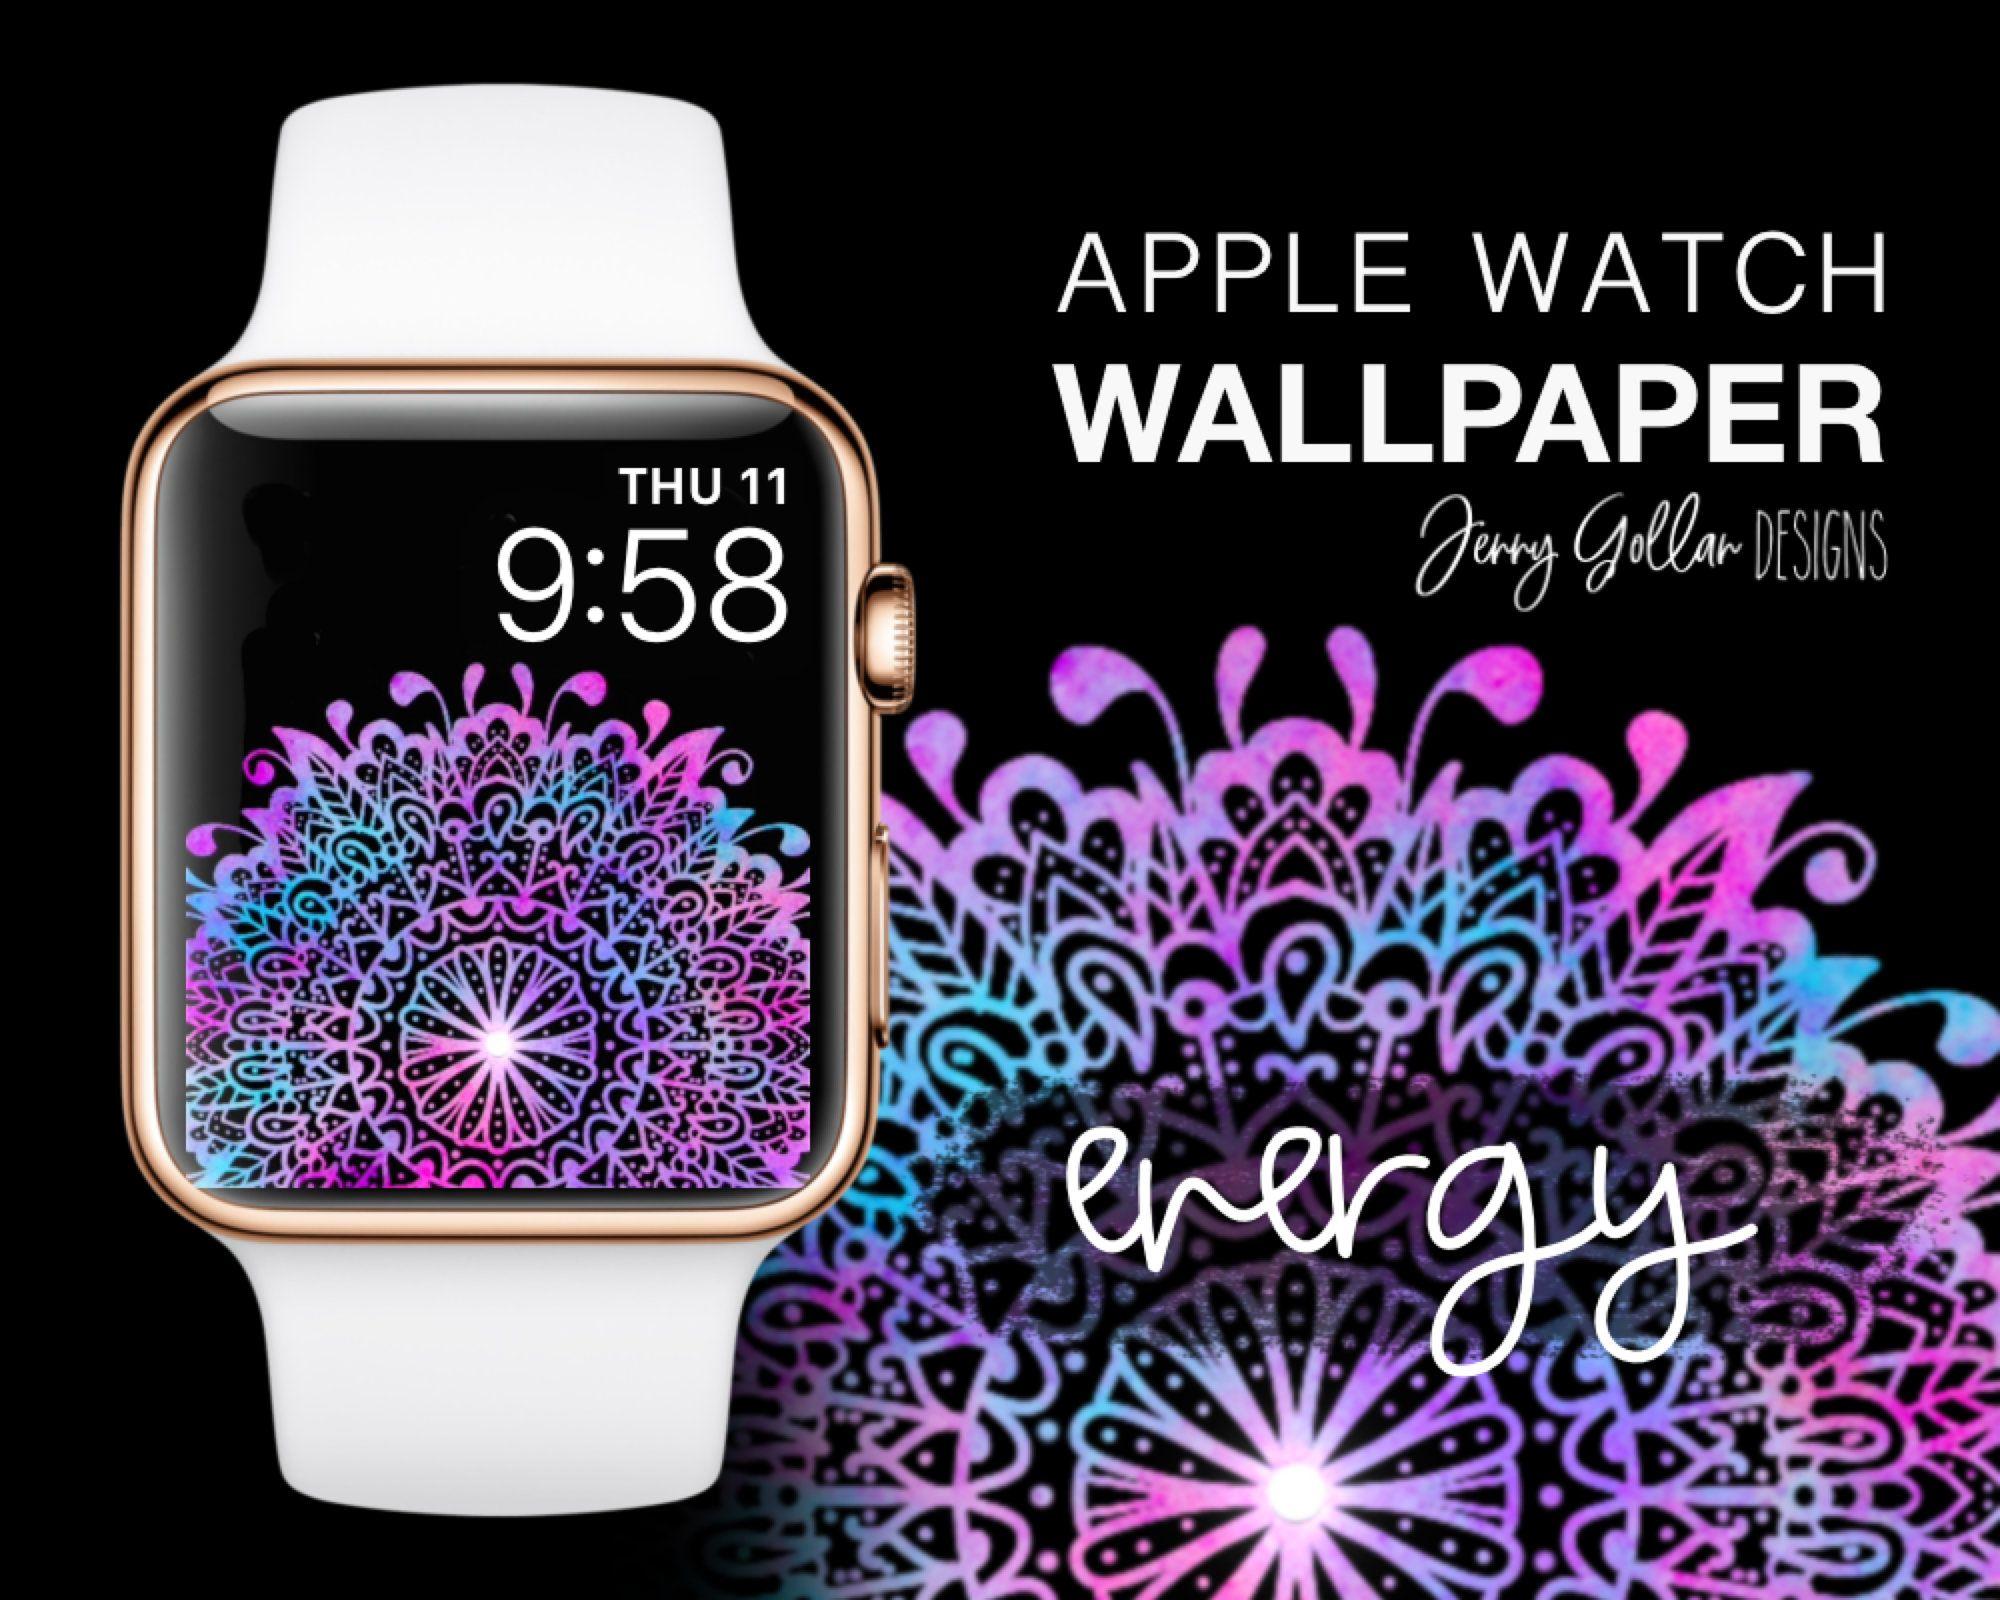 2000 x 1600 · jpeg - 125+ Apple Watch Wallpaper Design Ideas - Clear Wallpaper